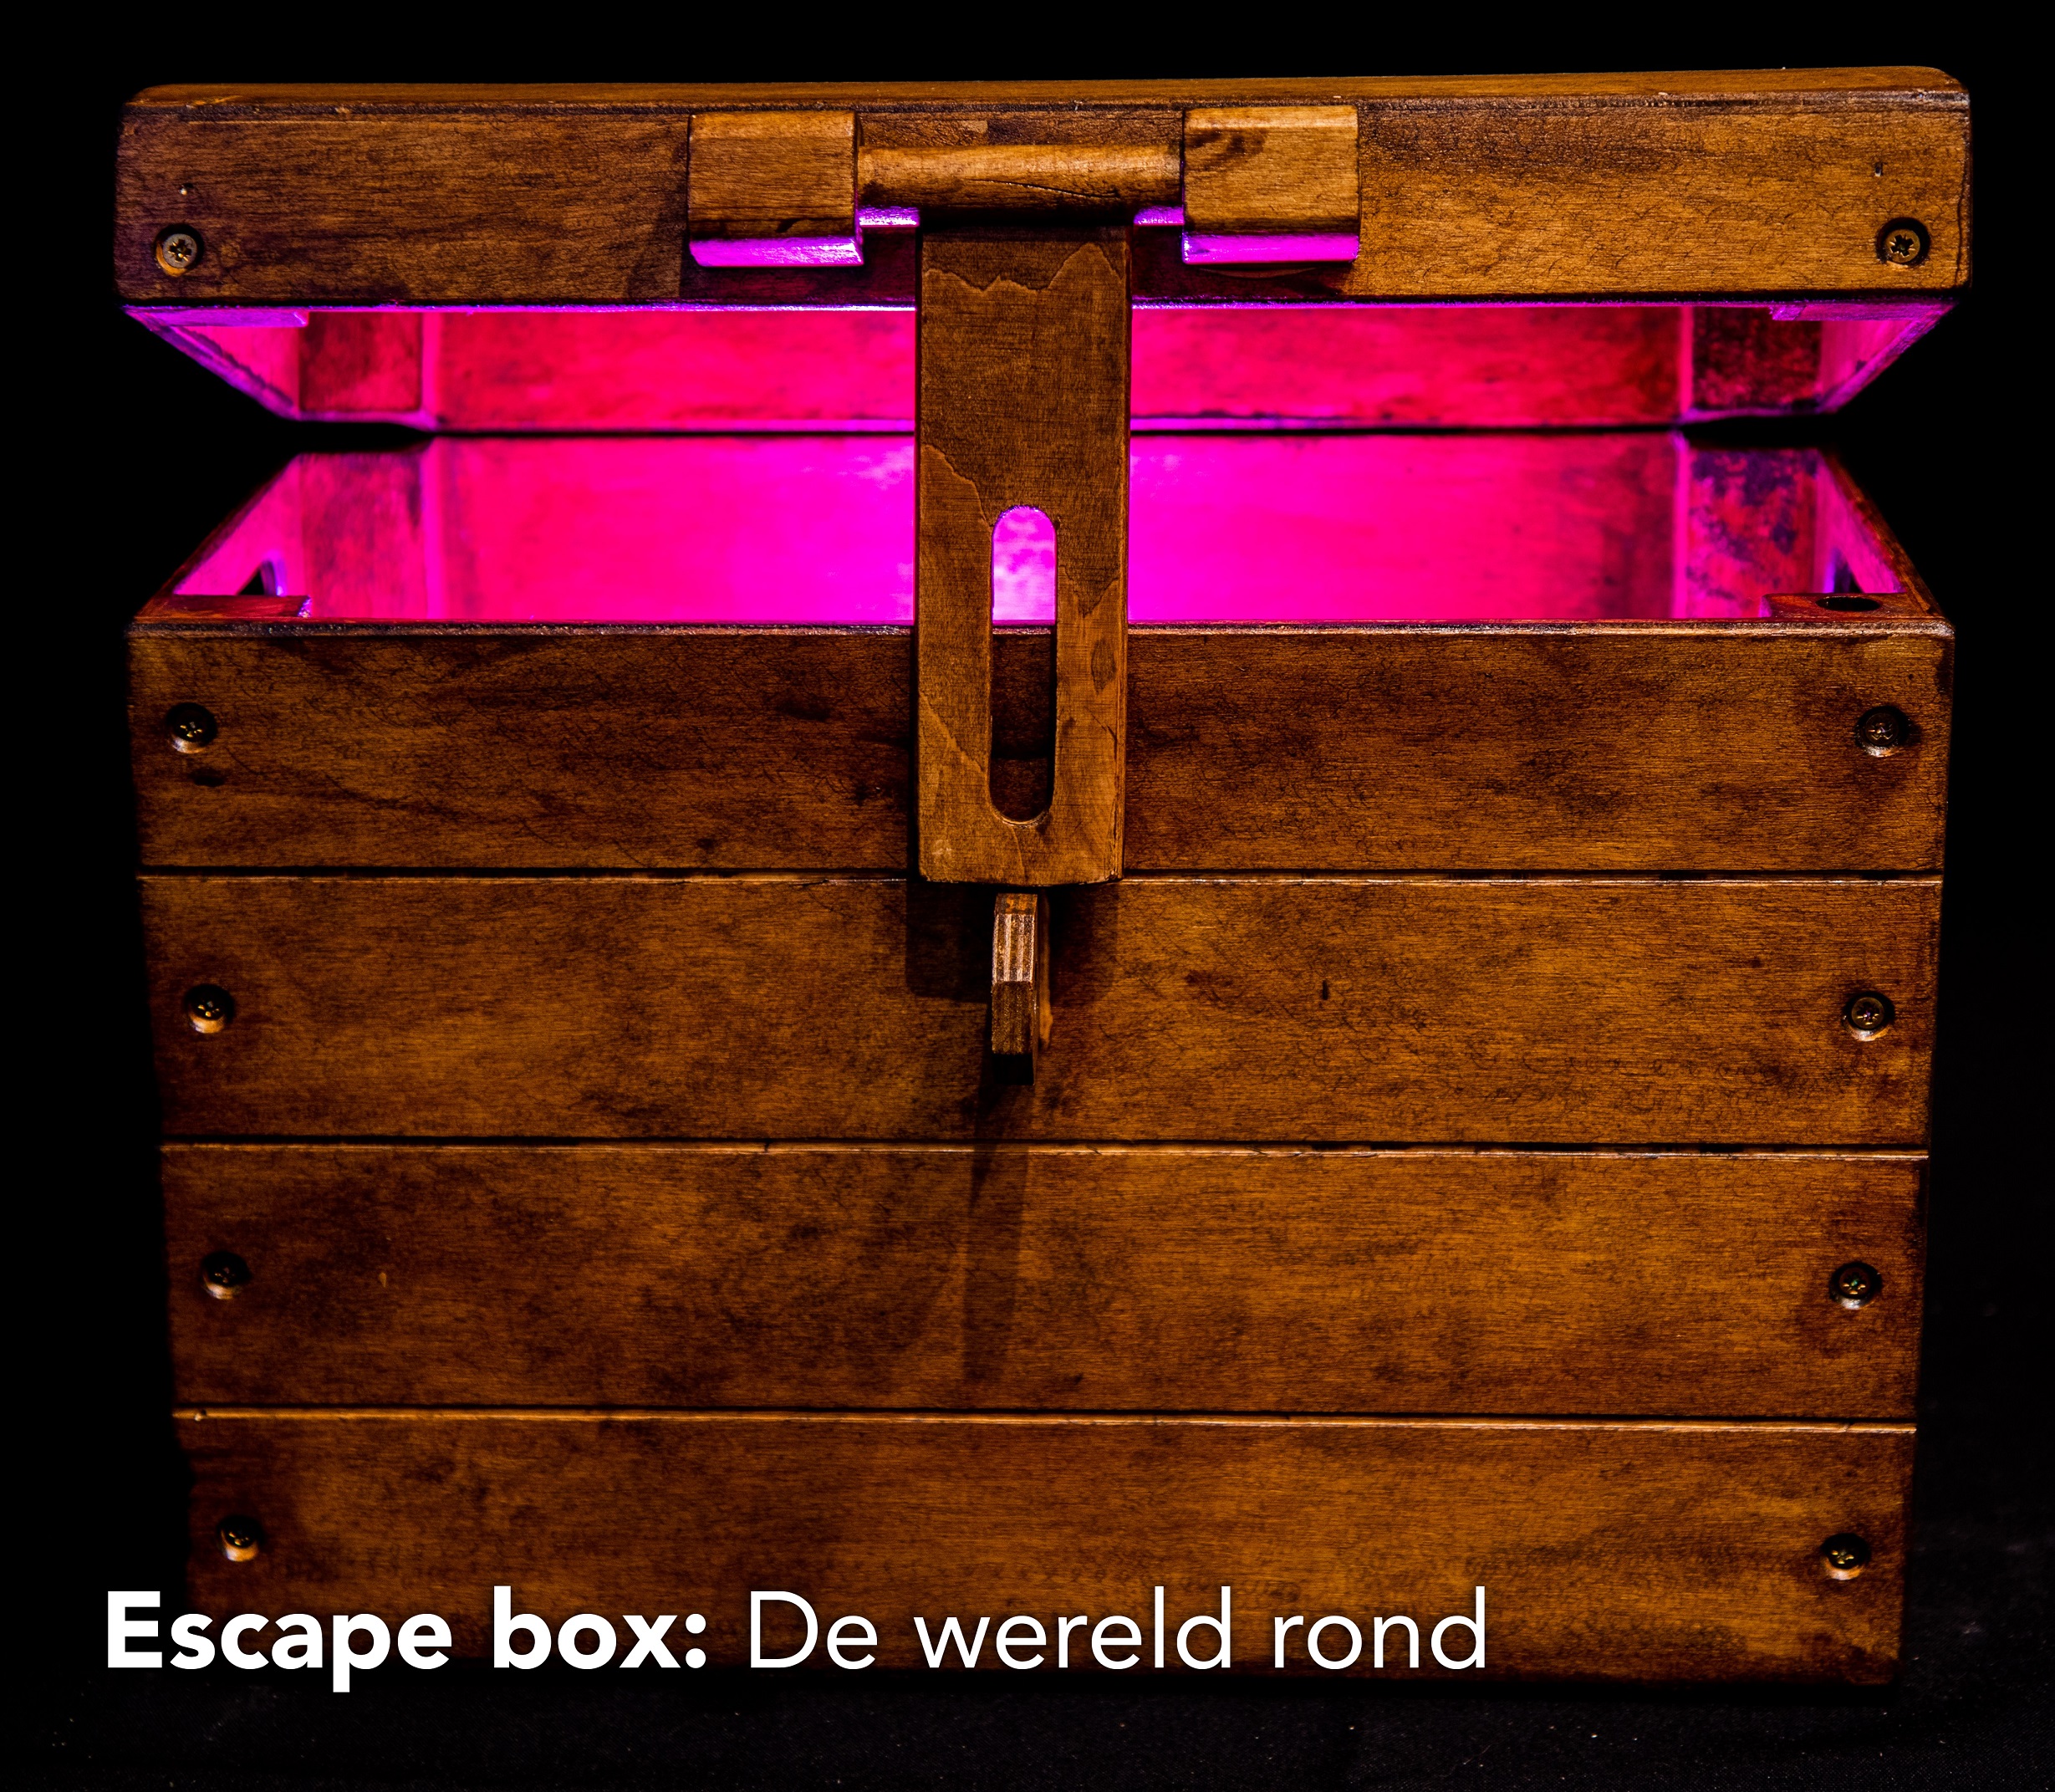 De escapebox met roze verlichting binnenin